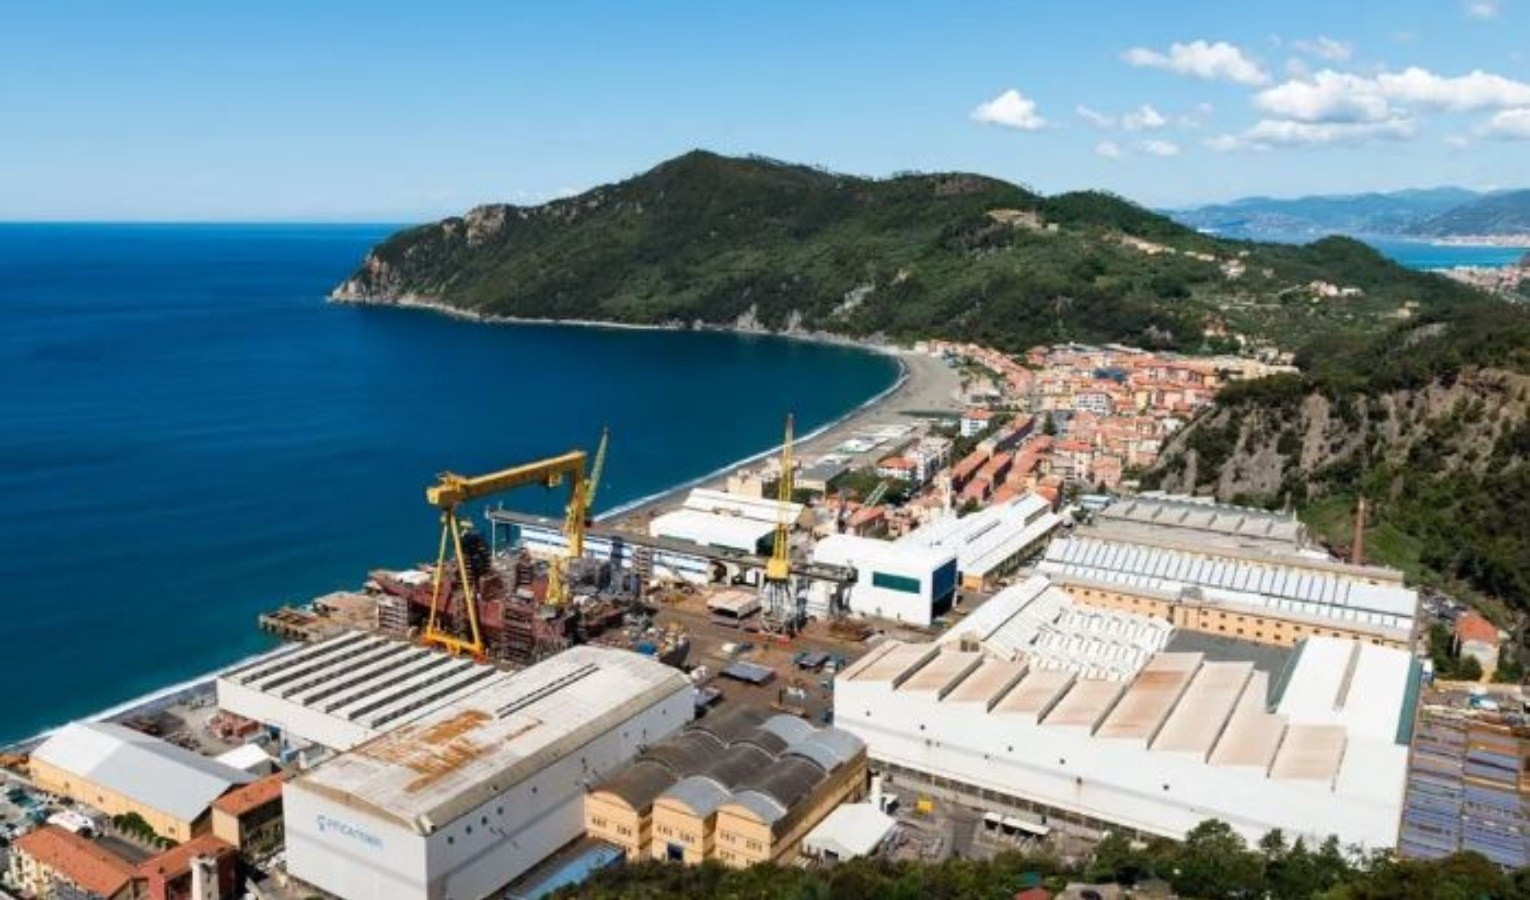 Ampliamento Fincantieri a Riva Trigoso, al via un tavolo tecnico per il rispetto ambientale